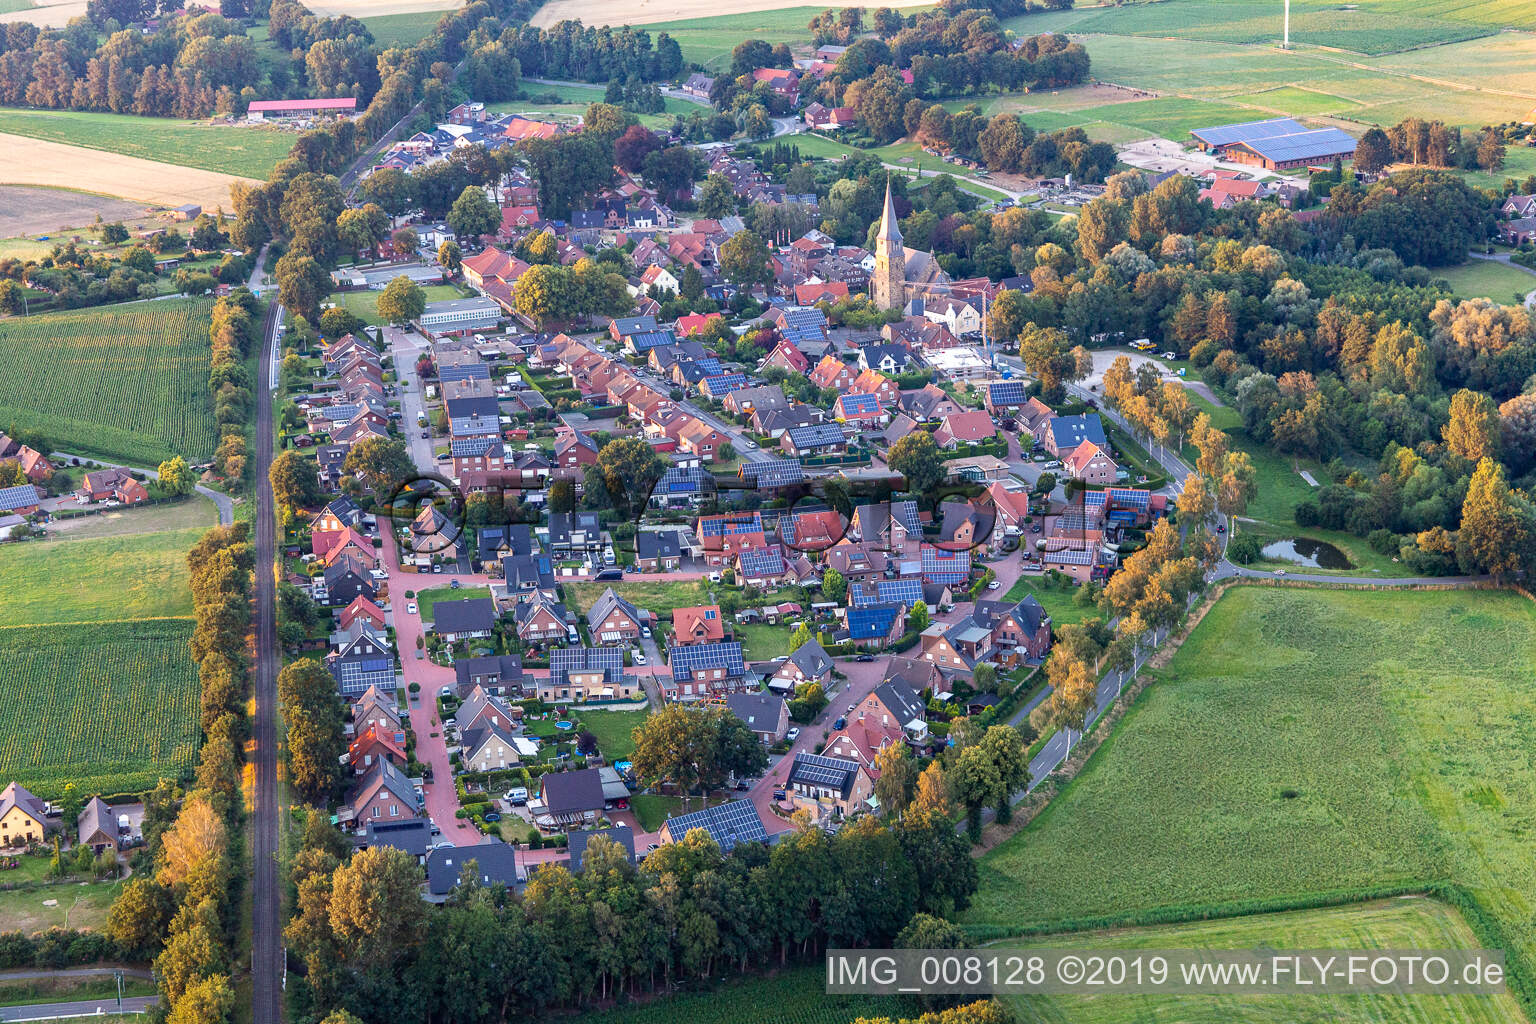 Klein Reken in the state North Rhine-Westphalia, Germany